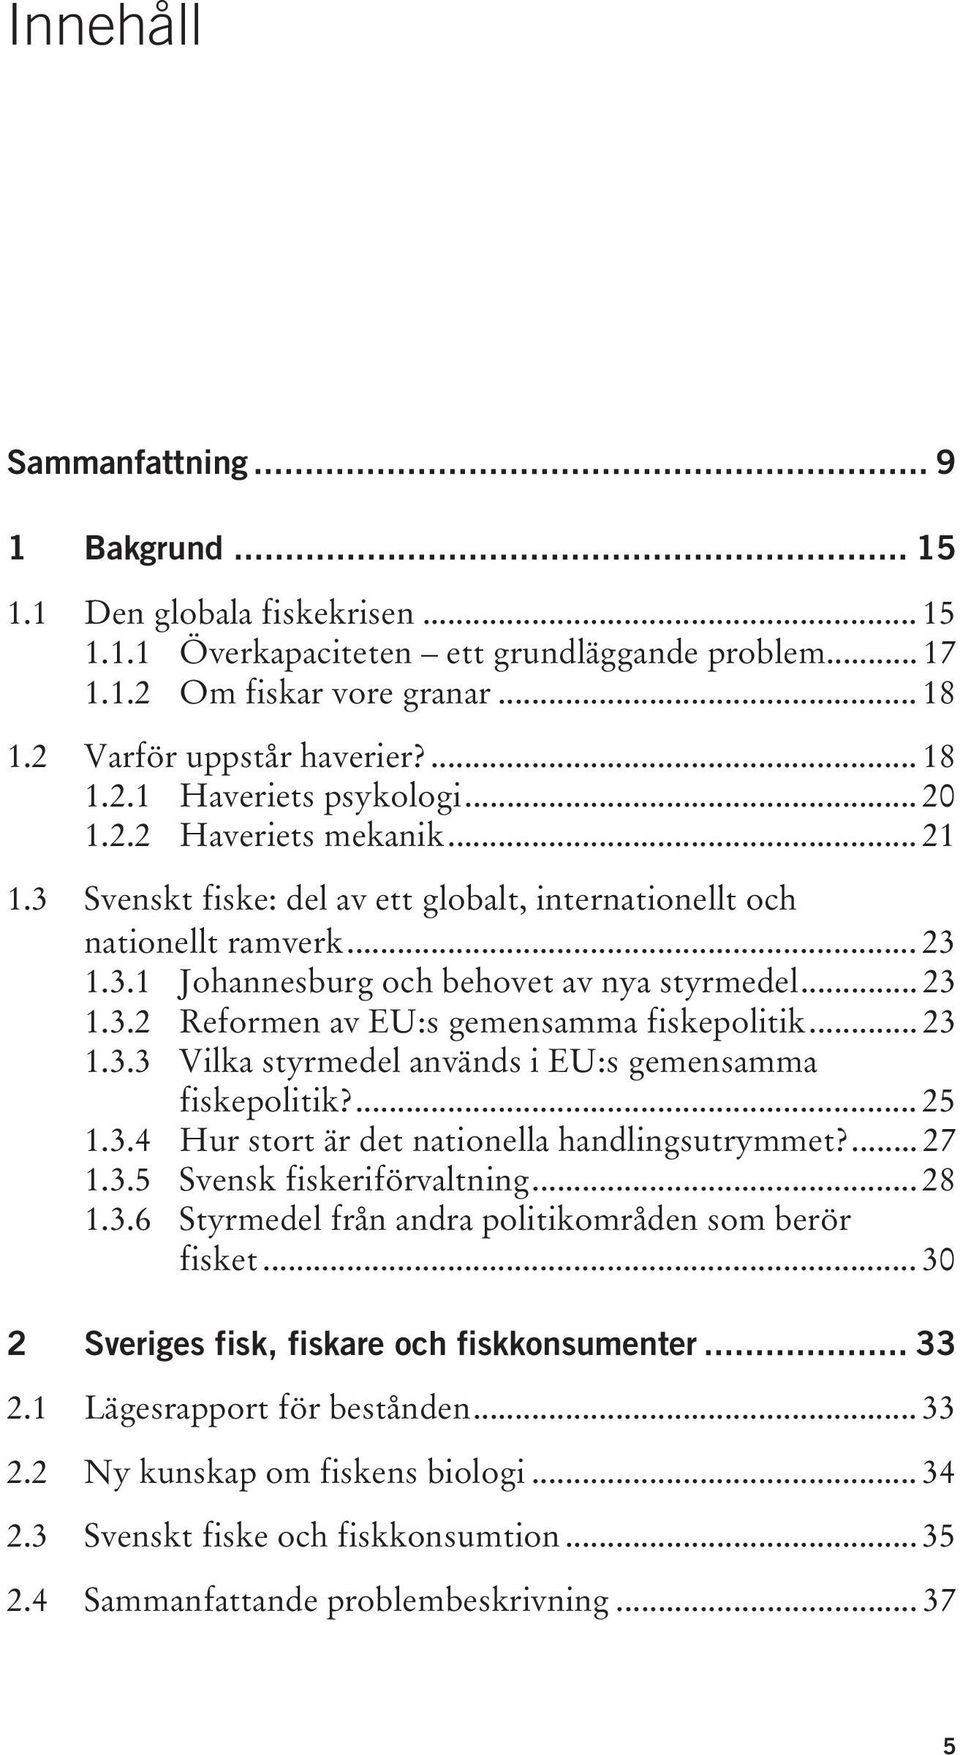 .. 23 1.3.2 Reformen av EU:s gemensamma fiskepolitik... 23 1.3.3 Vilka styrmedel används i EU:s gemensamma fiskepolitik?... 25 1.3.4 Hur stort är det nationella handlingsutrymmet?... 27 1.3.5 Svensk fiskeriförvaltning.